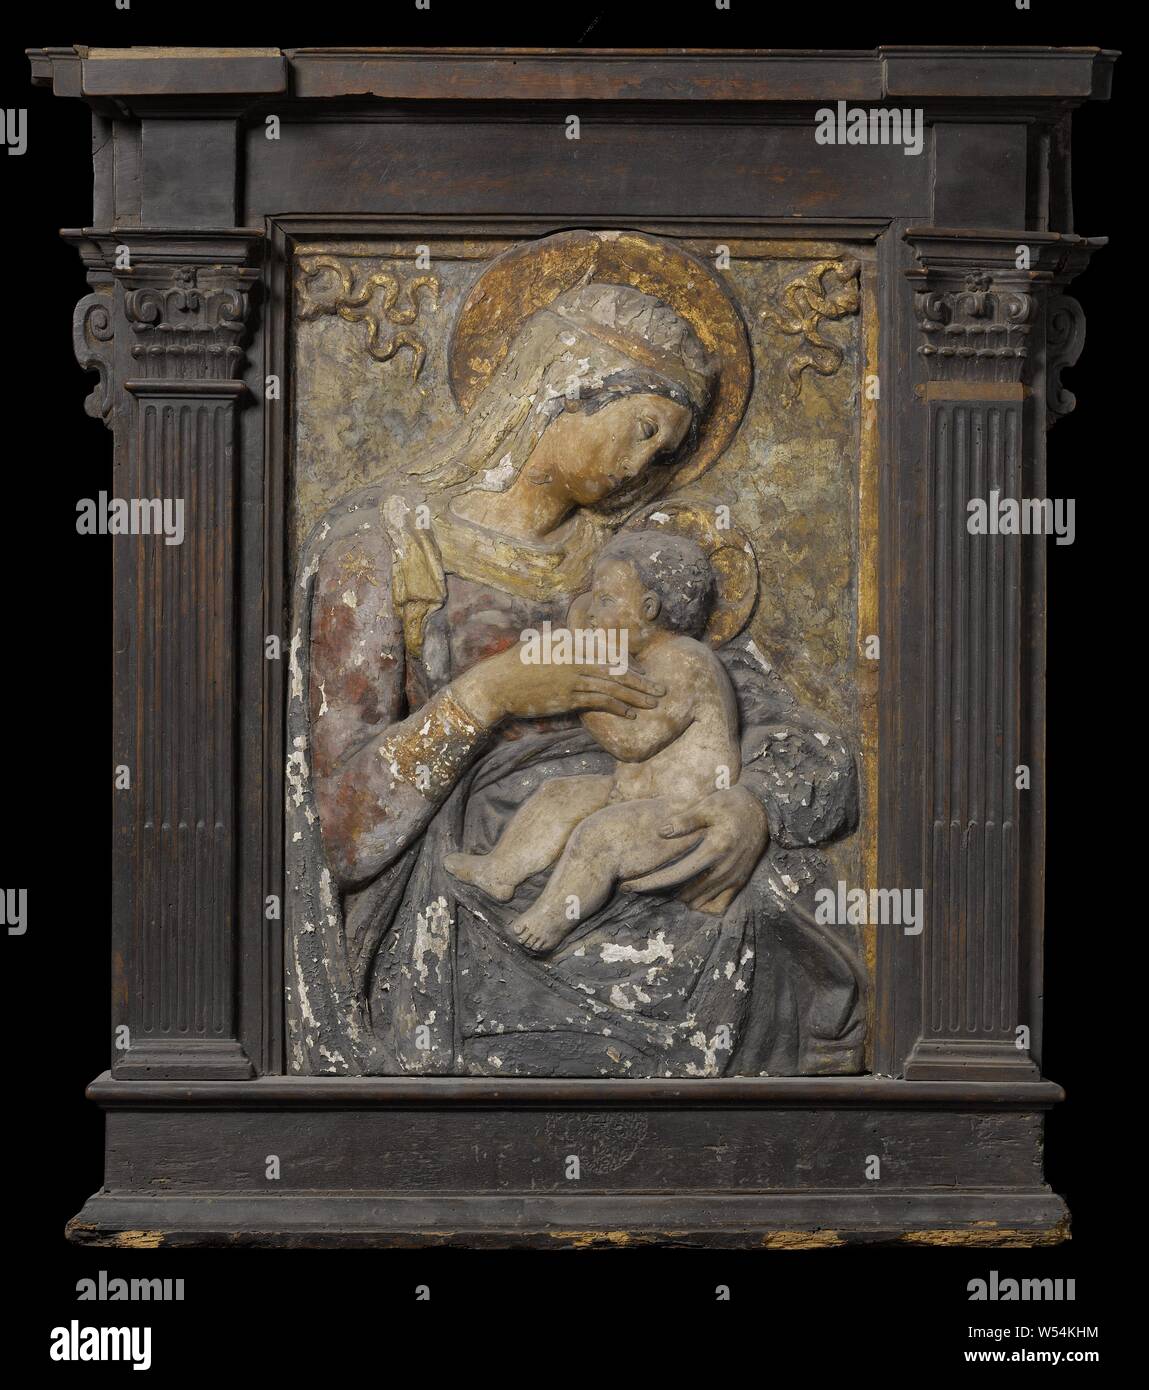 Vierge à l'enfant, Maria avec enfant, en stuc polychrome, en relief. Marie, qui est représenté jusqu'au-dessus des genoux et trois-quarts vers la droite, tient l'enfant qui est l'alimentation de lui sur le côté gauche. Elle tient la main droite de la poitrine. Sa tête est représentée de profil, ainsi que l'enfant utilisé pour elle. Dans les coins supérieurs un anneau avec un ruban., Urbano da Cortona (après), ch. 1425 - c. 1460, terre cuite (argile), H 54 cm × w 39 cm H 79 cm × 70 cm × w t 12 cm w 19,2 kg Banque D'Images